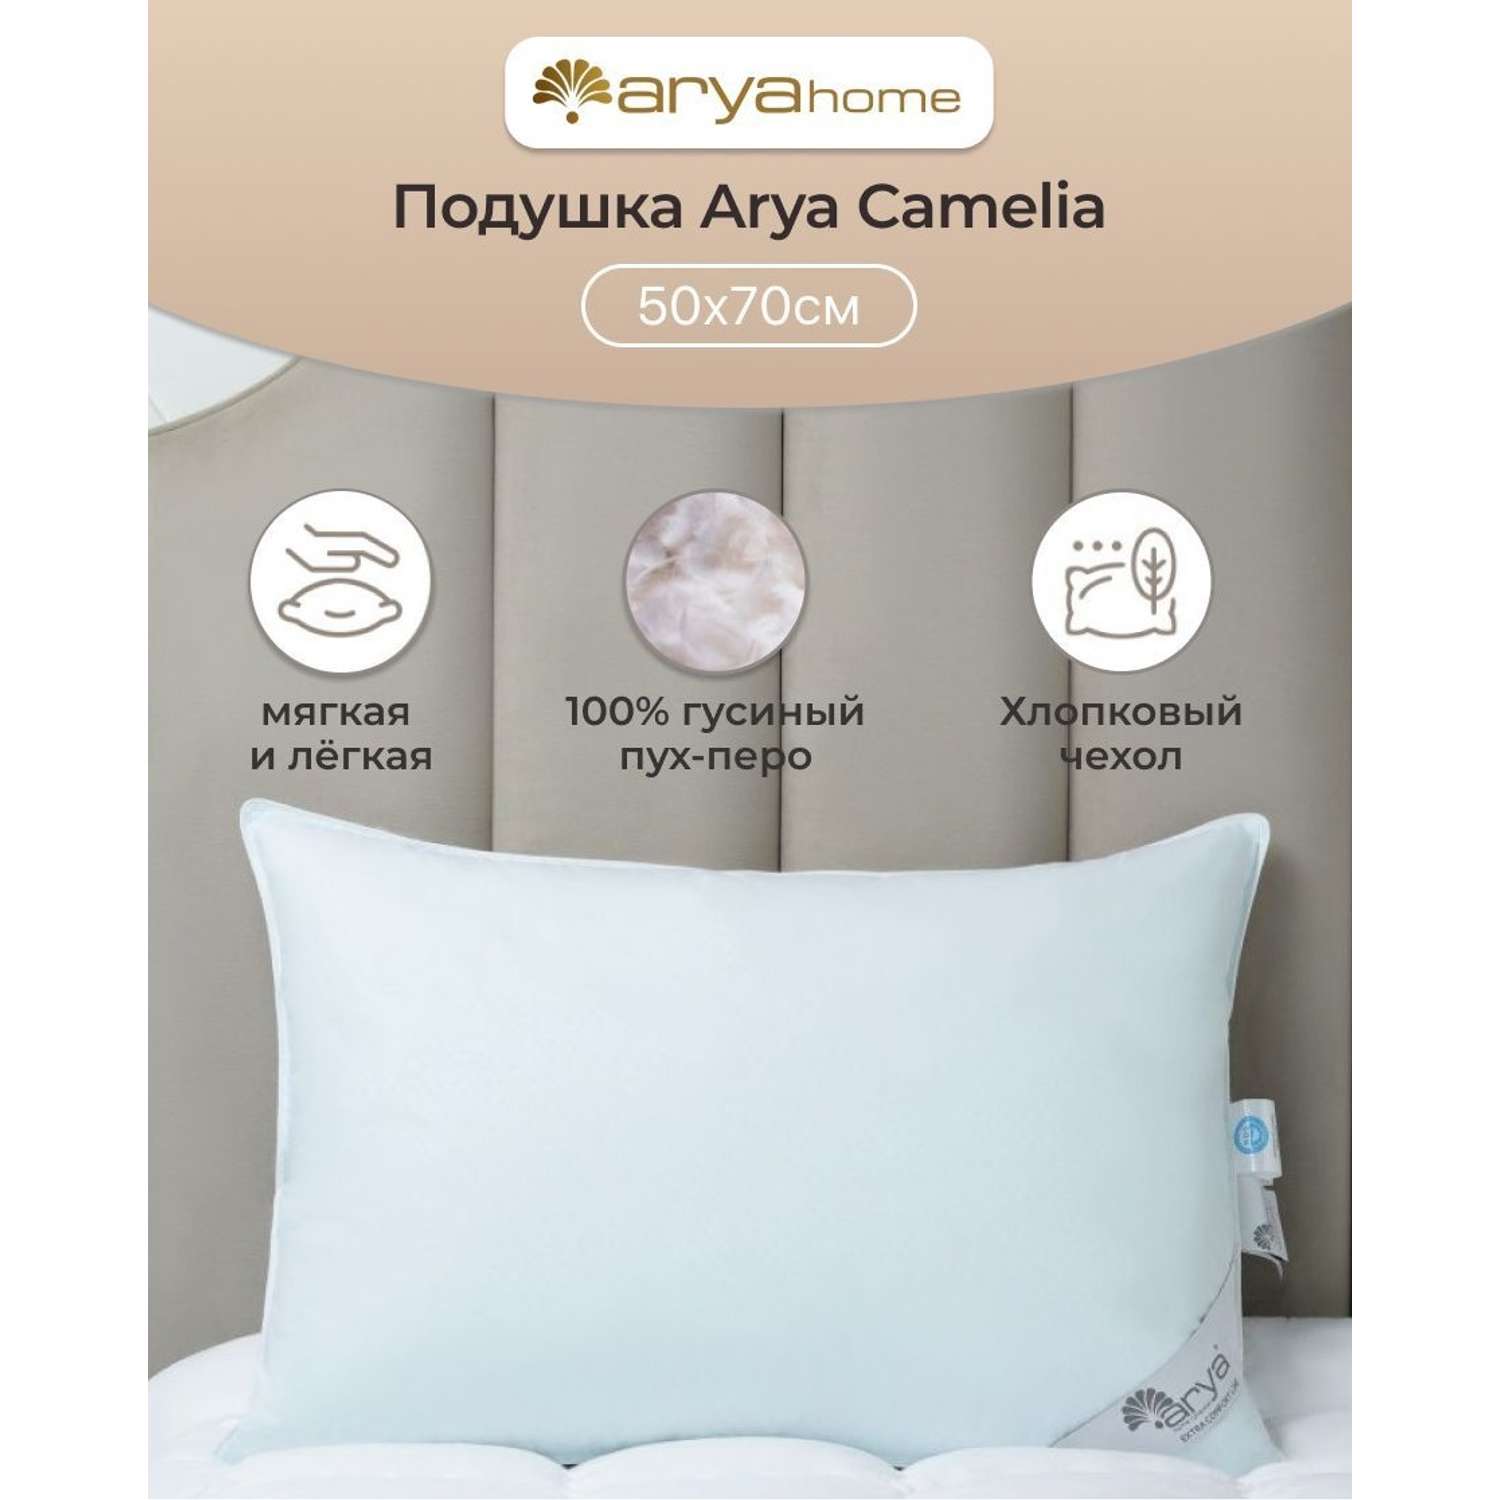 Подушка Arya Home Collection 50x70 см для сна Camelia голубой цвет - фото 1